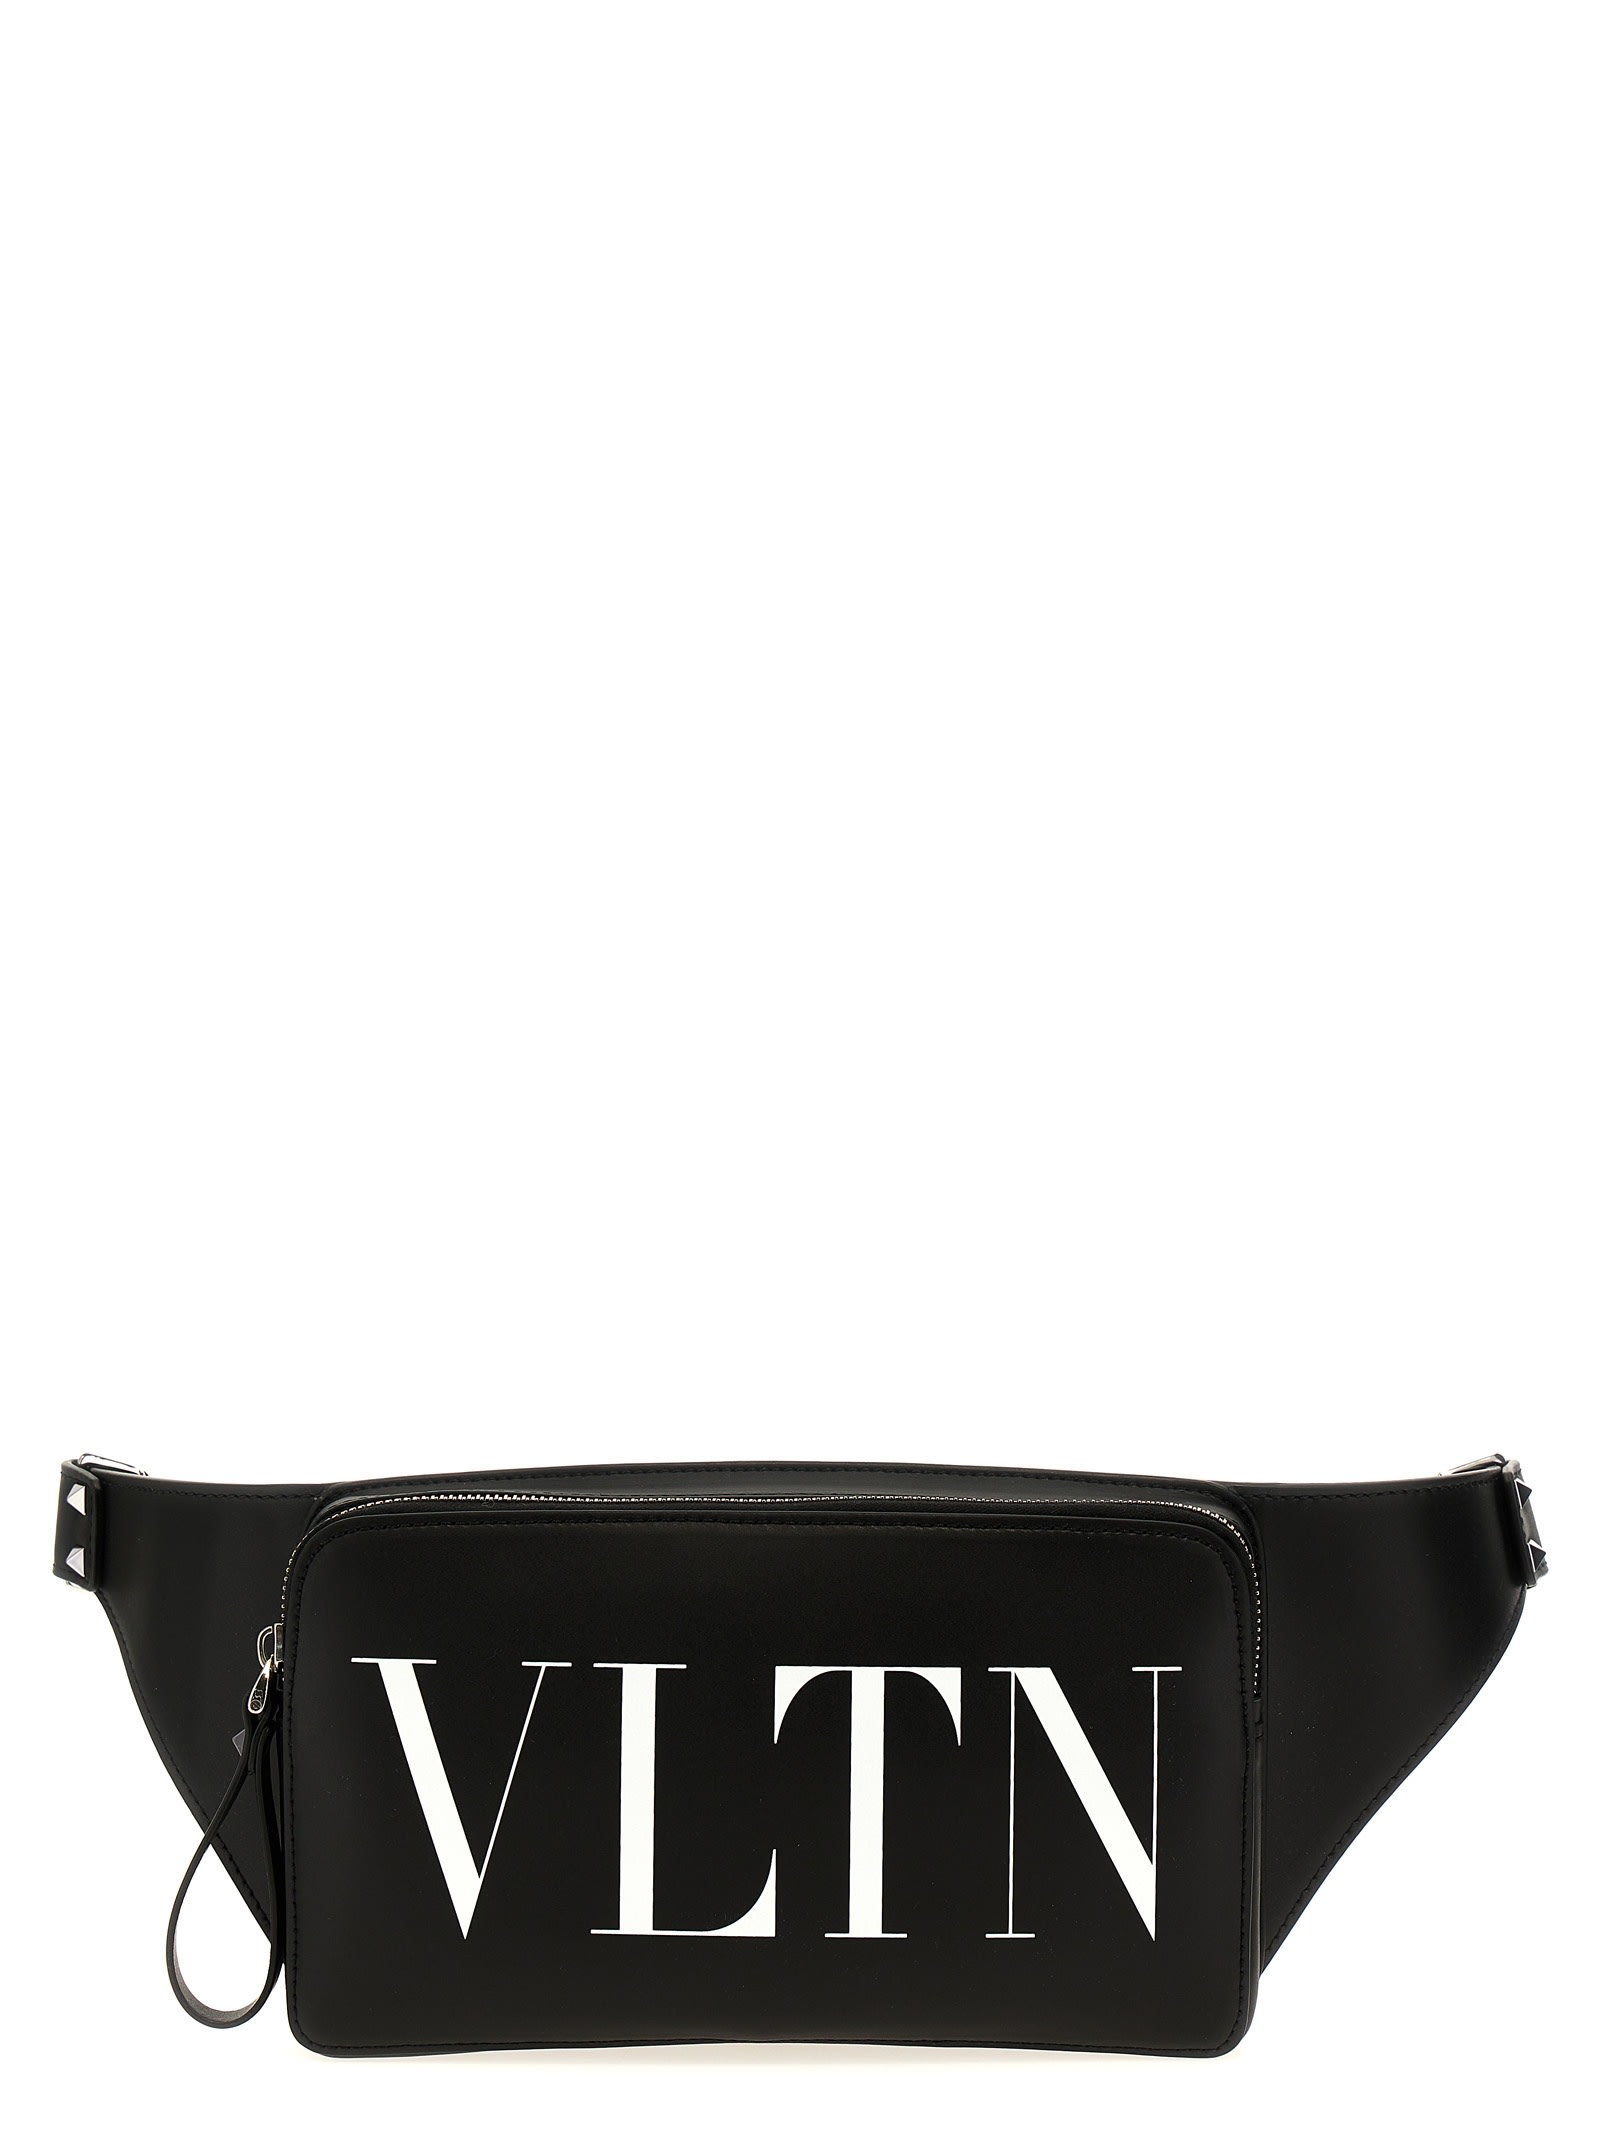 Valentino Garavani Vltn Waist Bag In White/black